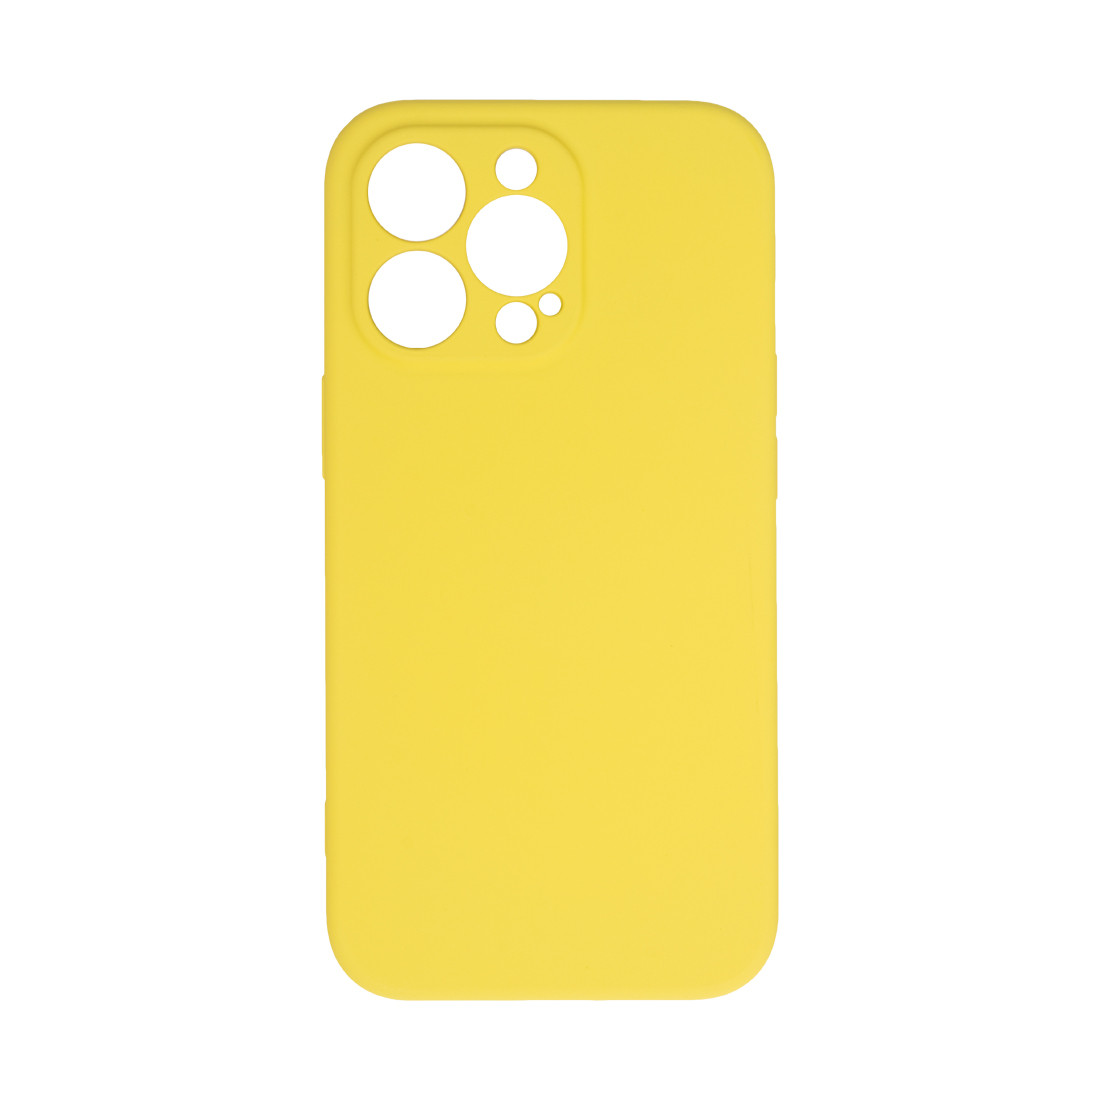 Чехол для телефона  X-Game  XG-HS78  для Iphone 13 Pro  Силиконовый  Жёлтый  Пол. пакет